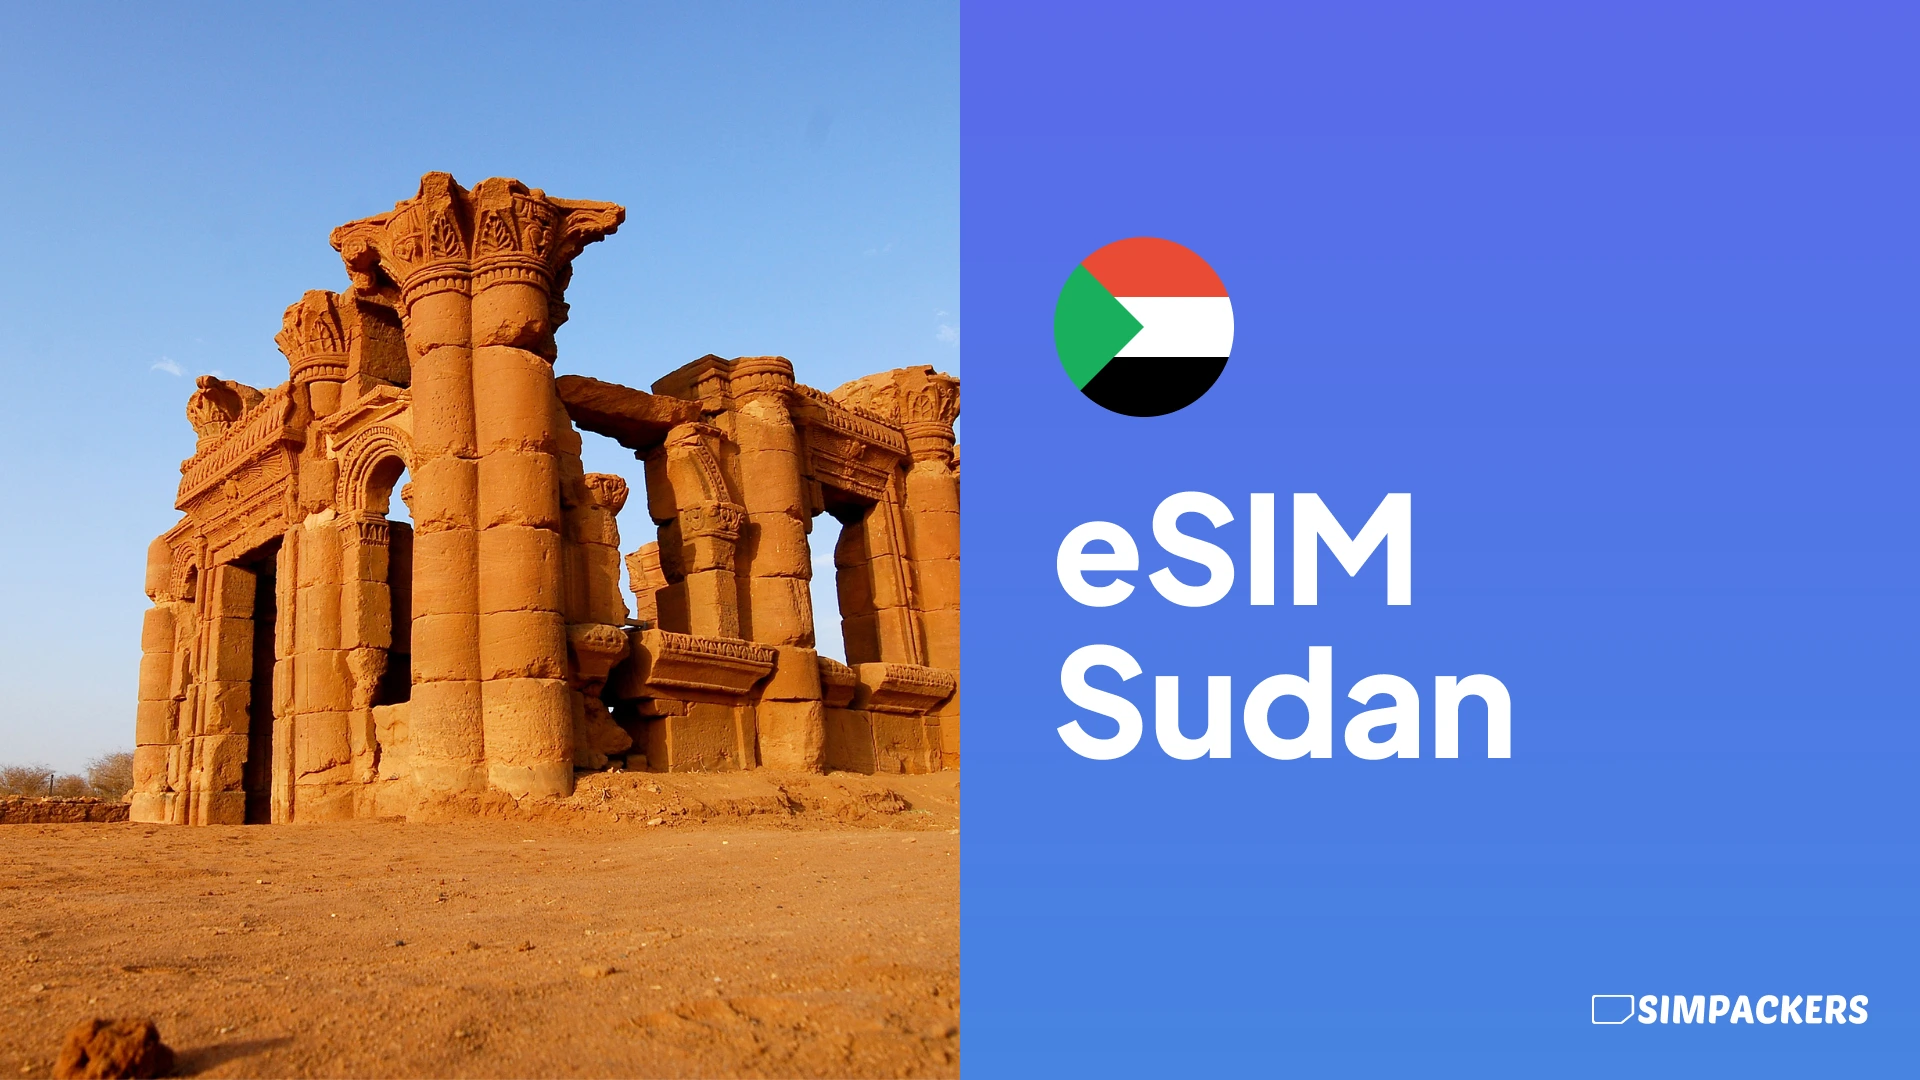 DE/FEATURED_IMAGES/esim-sudan.webp